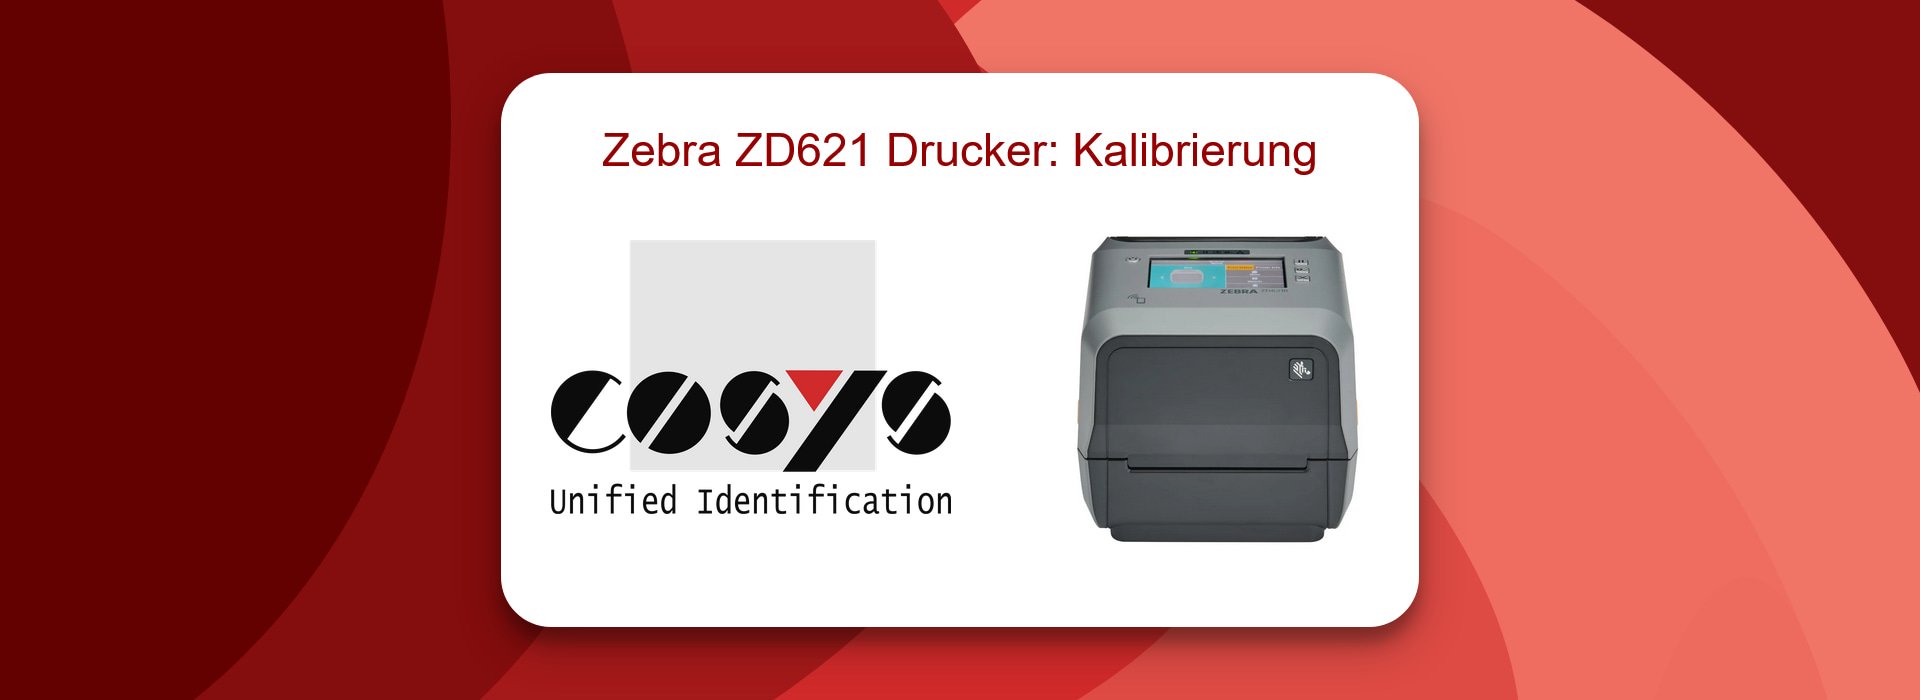 Zebra ZD621 Drucker: Kalibrierungs